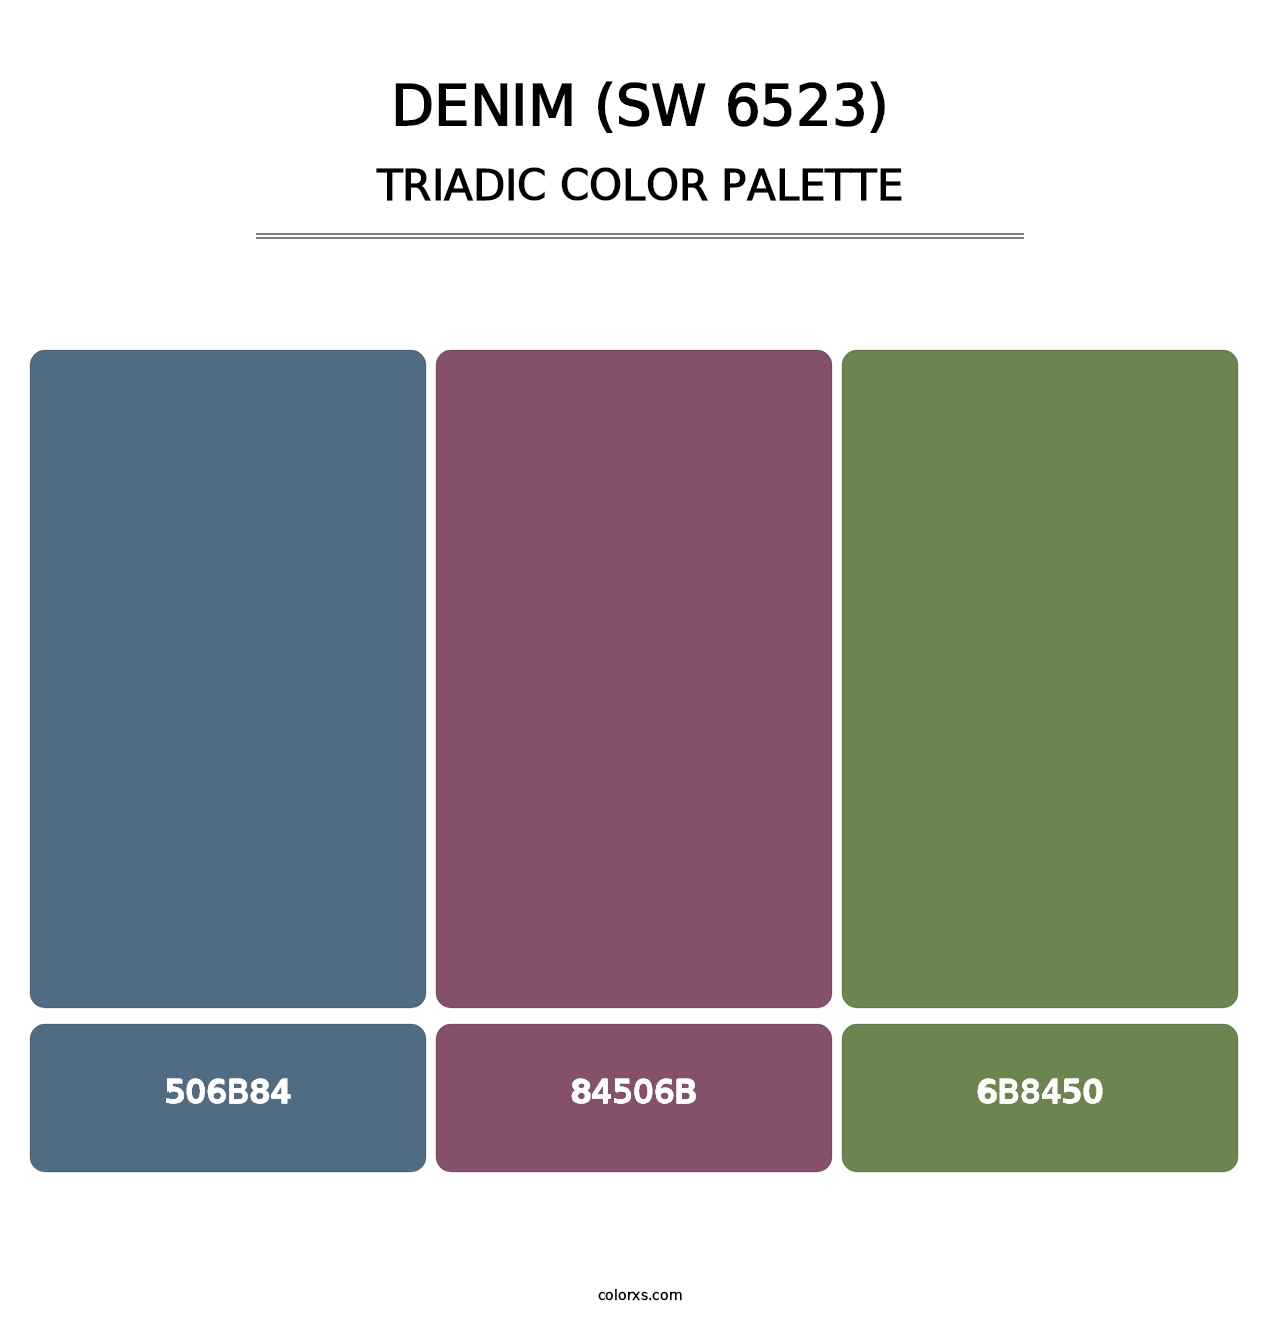 Denim (SW 6523) - Triadic Color Palette